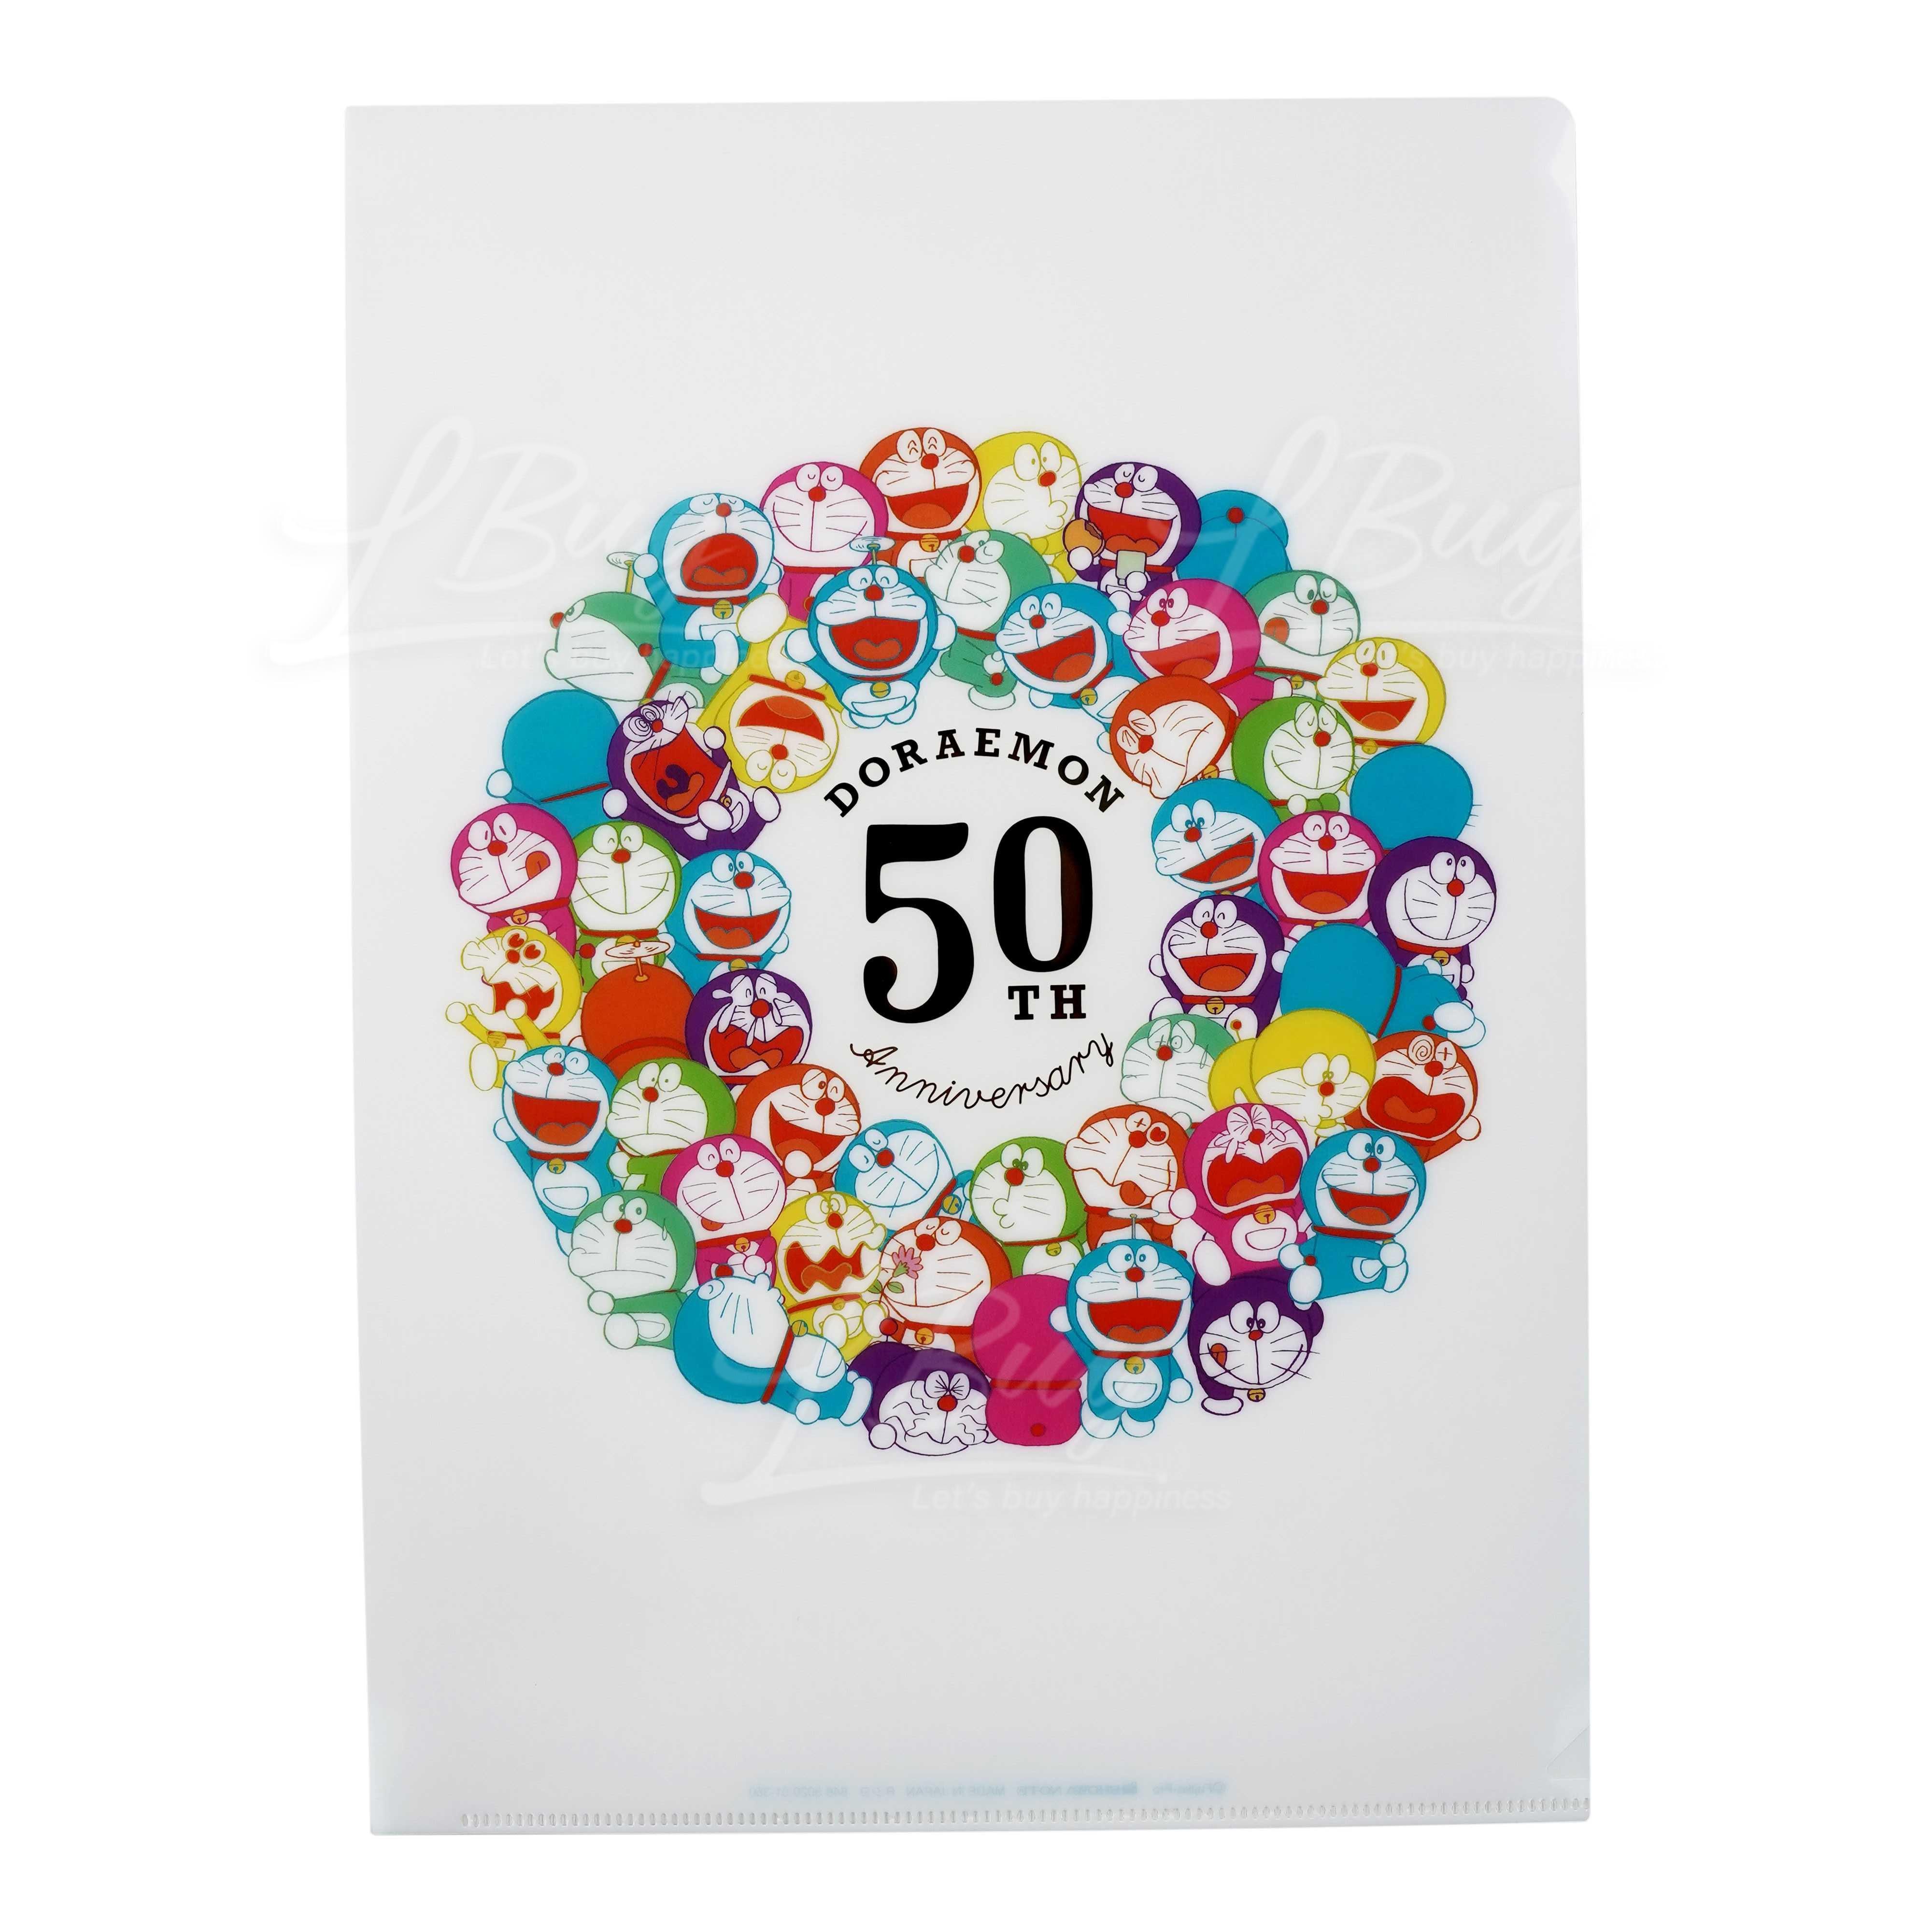 Doraemon 50th Anniversary Commemorative A4 Folder (Classic Version)